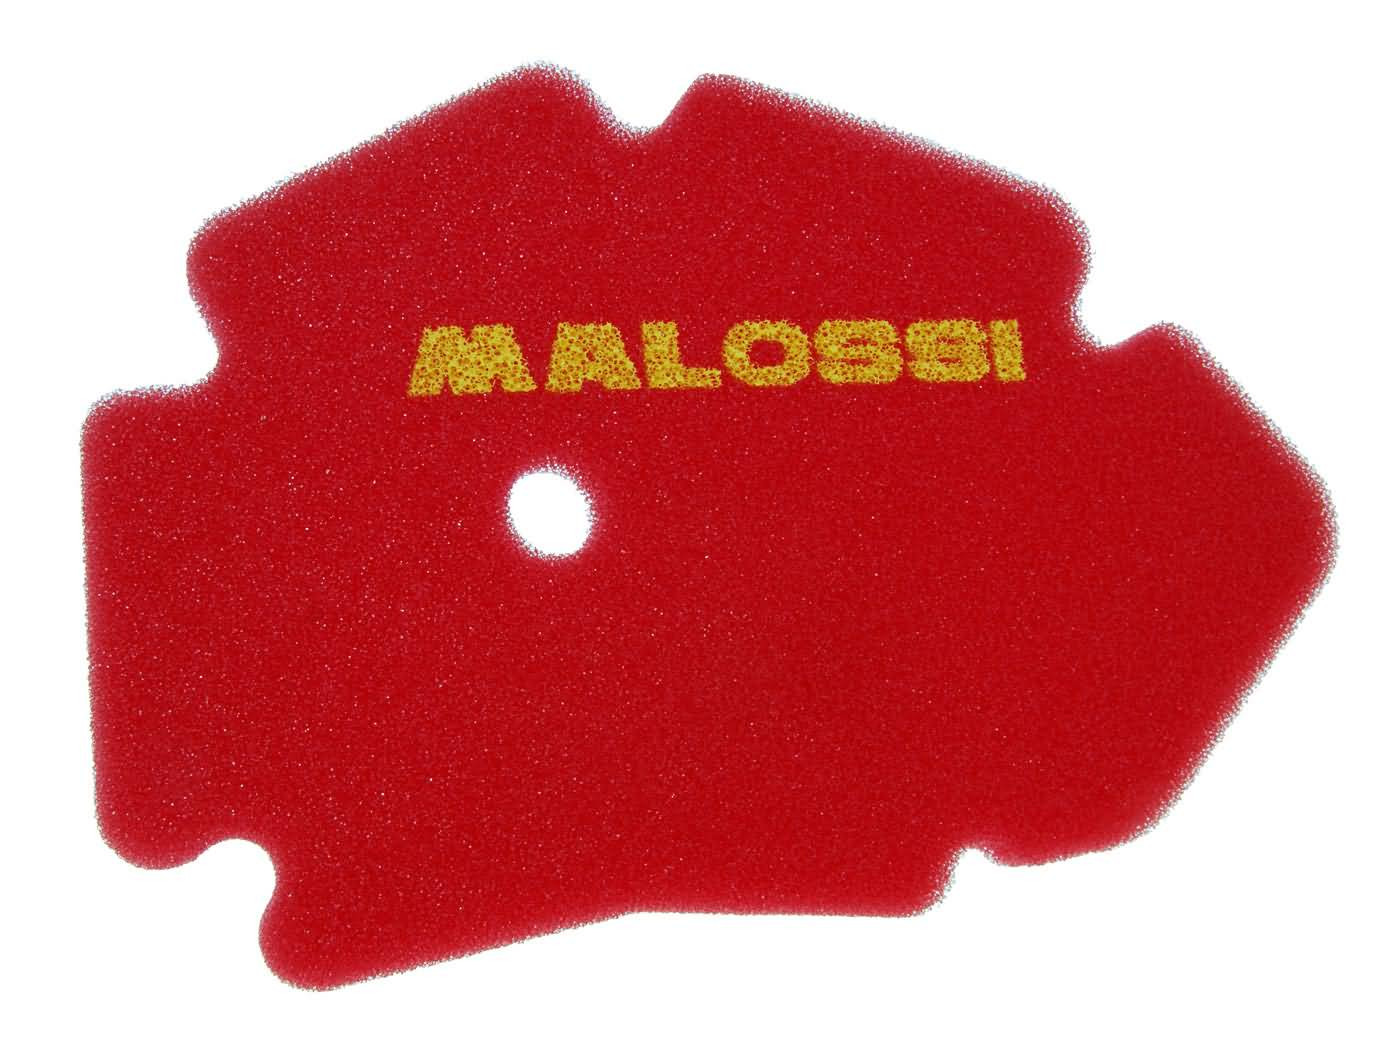 Malossi piros légszűrőbetét - Gilera DNA, Runner VX, VXR